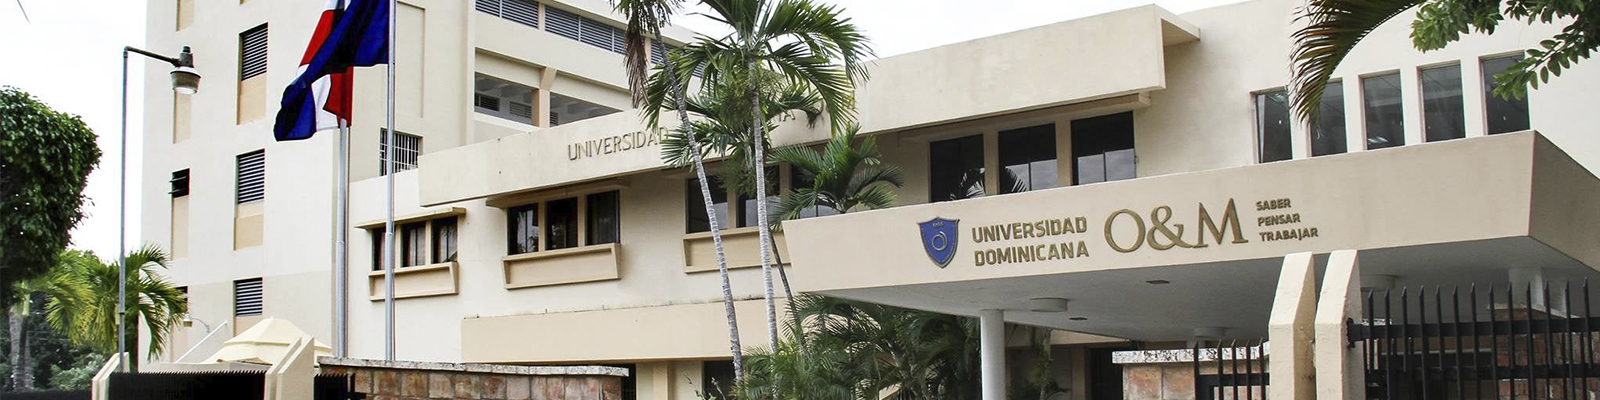 Universidad Dominicana Organización y Método ( O&M )